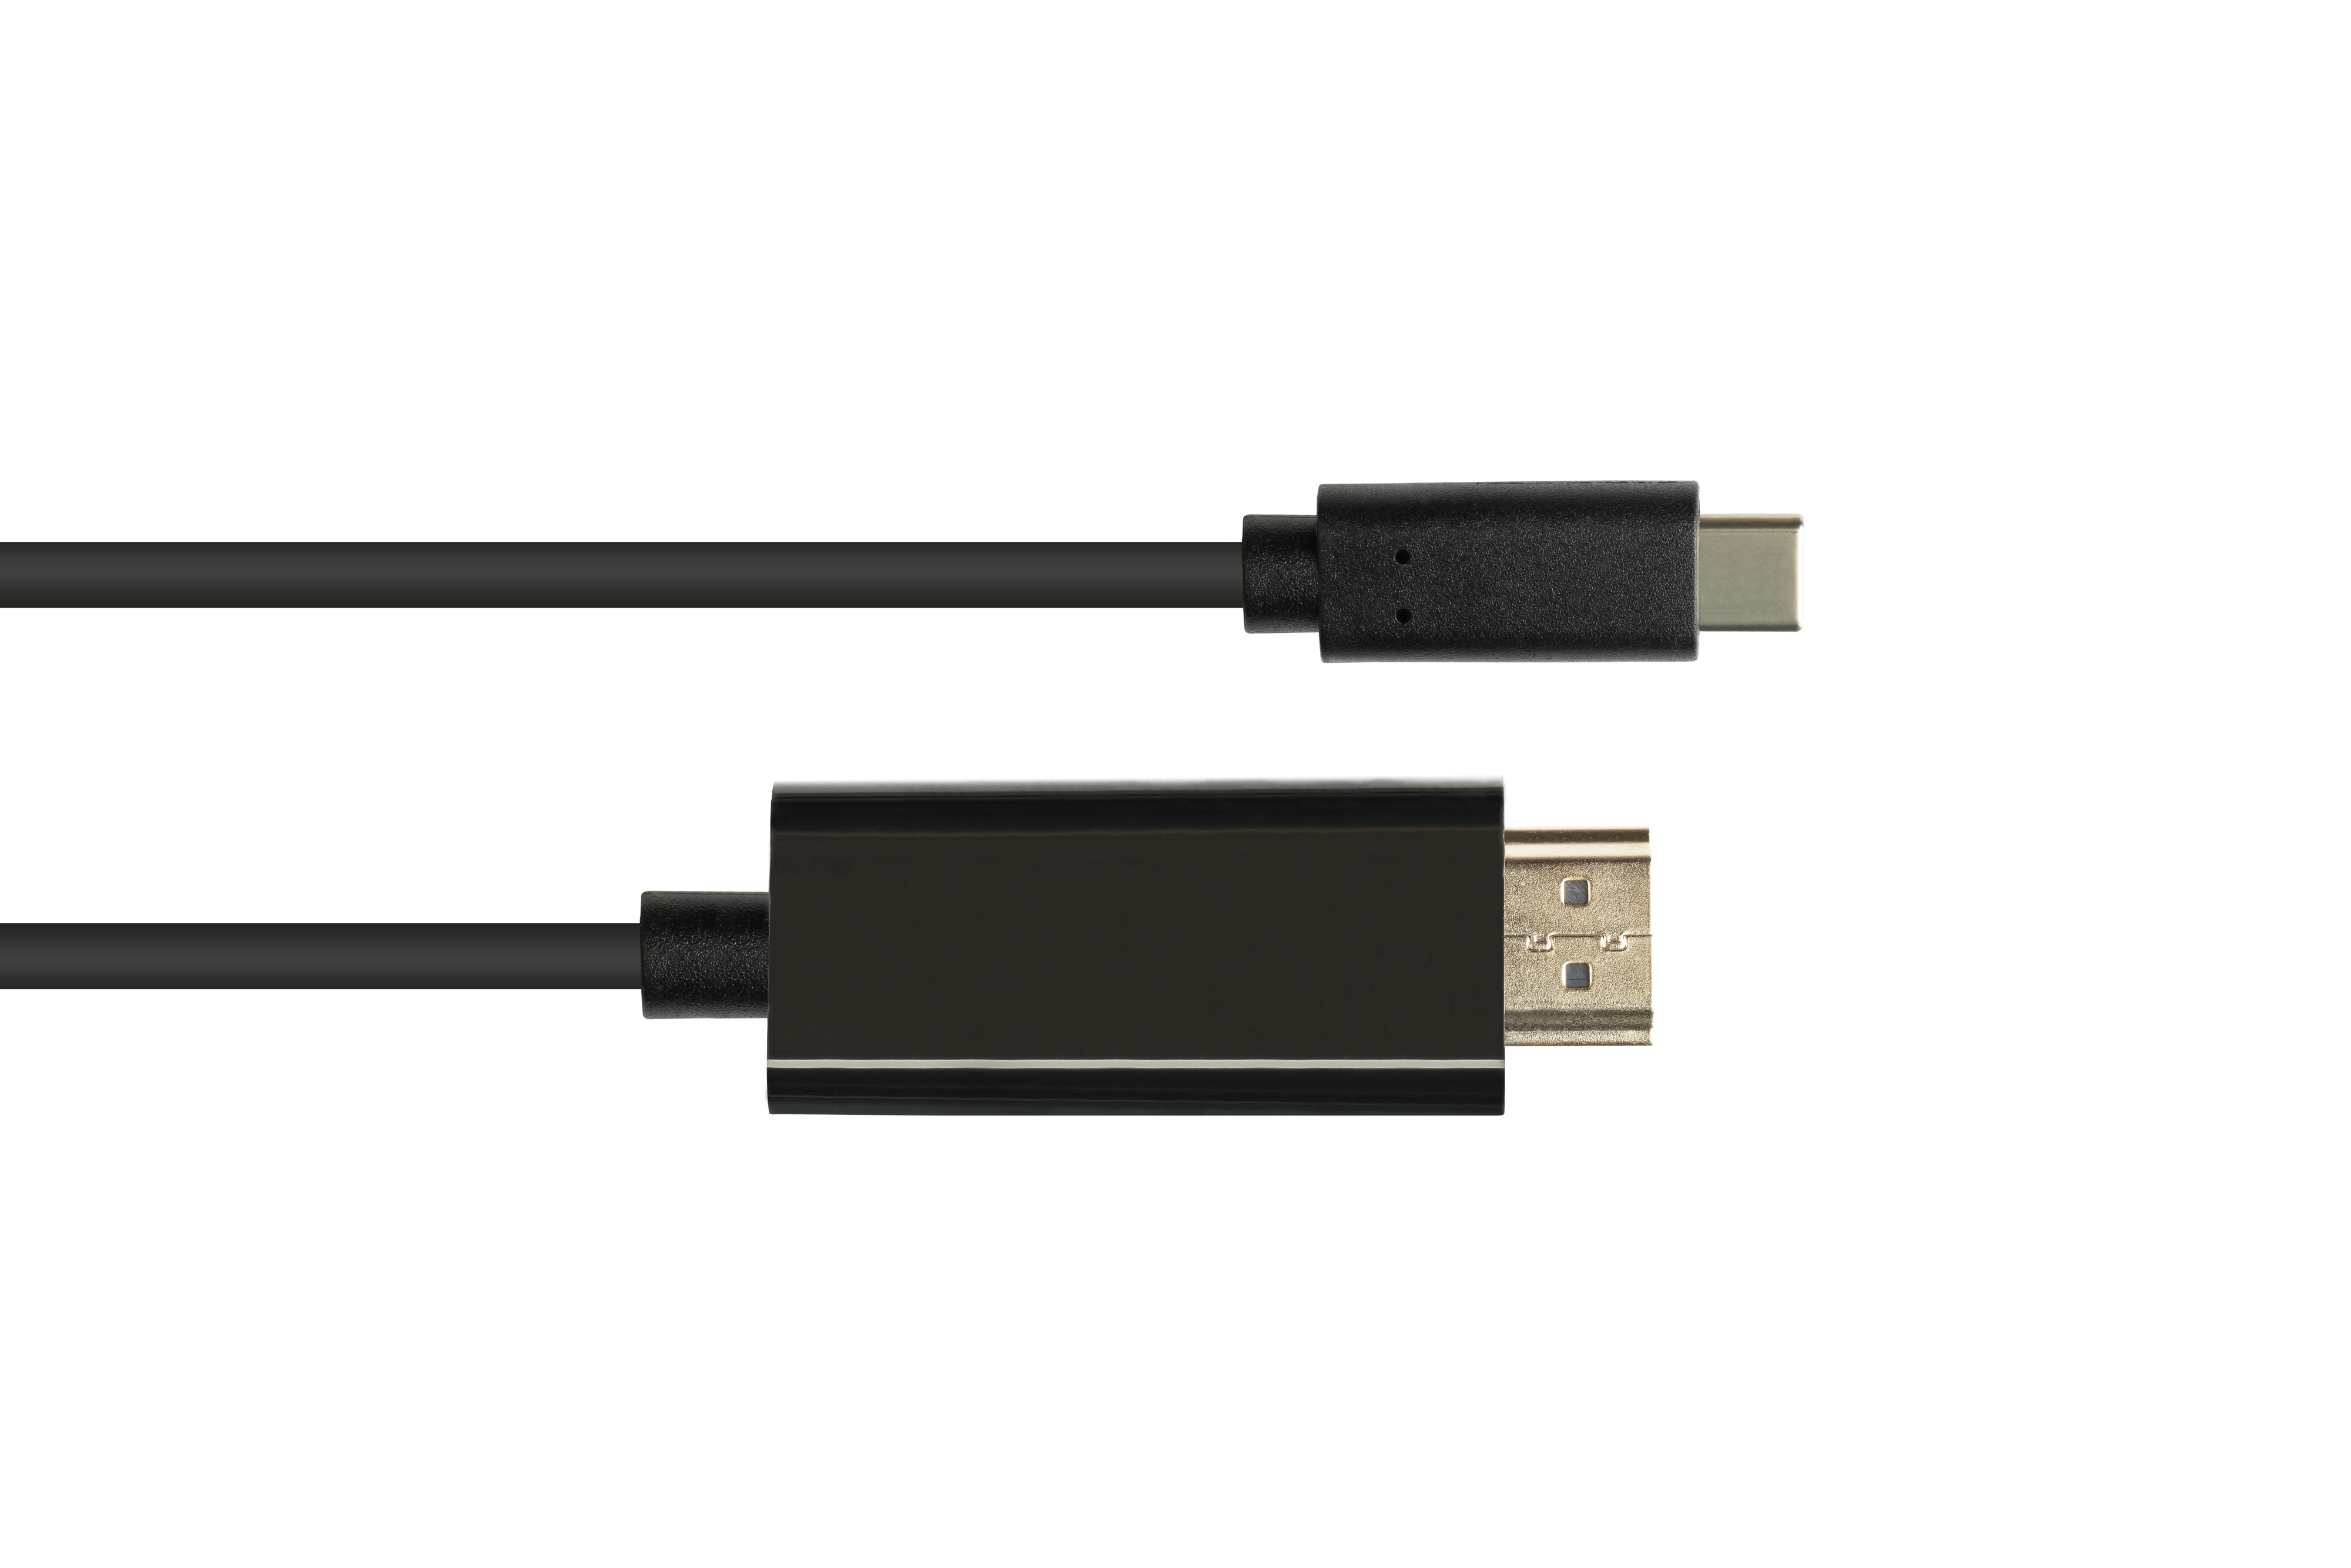 / CU, an UHD Stecker schwarz 2.0 4K @60Hz, Stecker, USB-C™ HDMI Adapterkabel KABELMEISTER